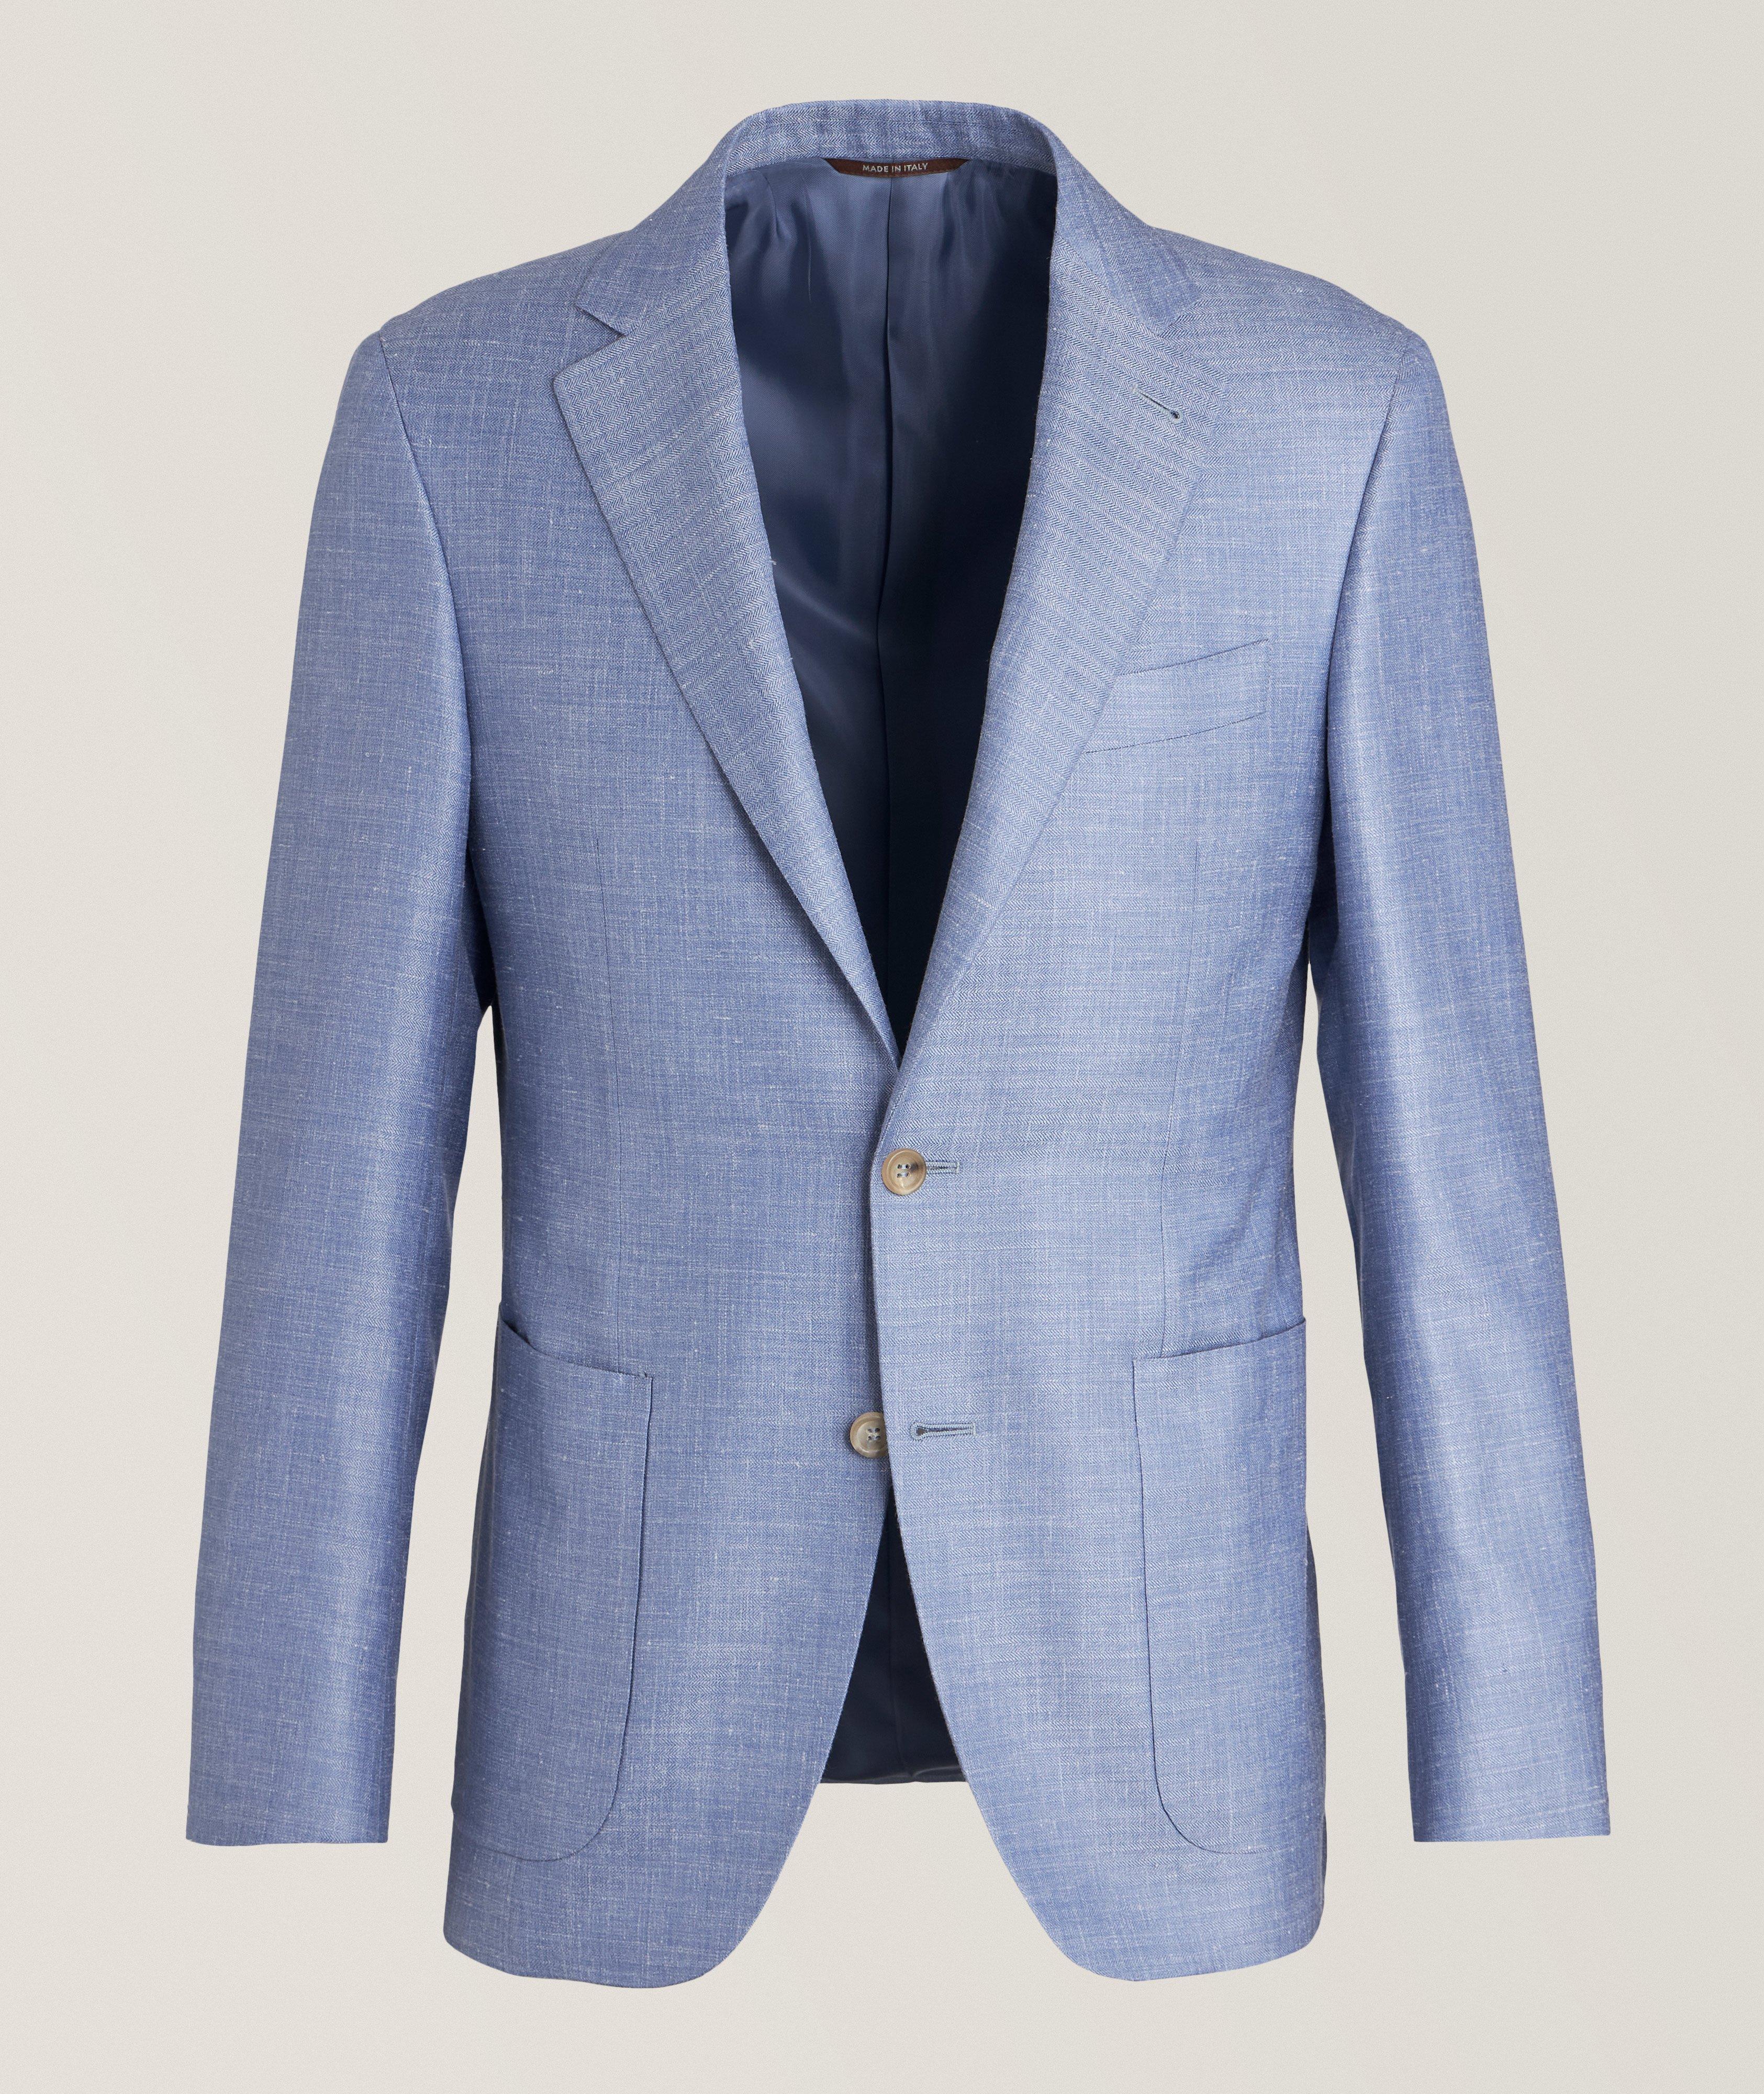 Kei Herringbone Wool, Silk & Linen Sport Jacket image 0